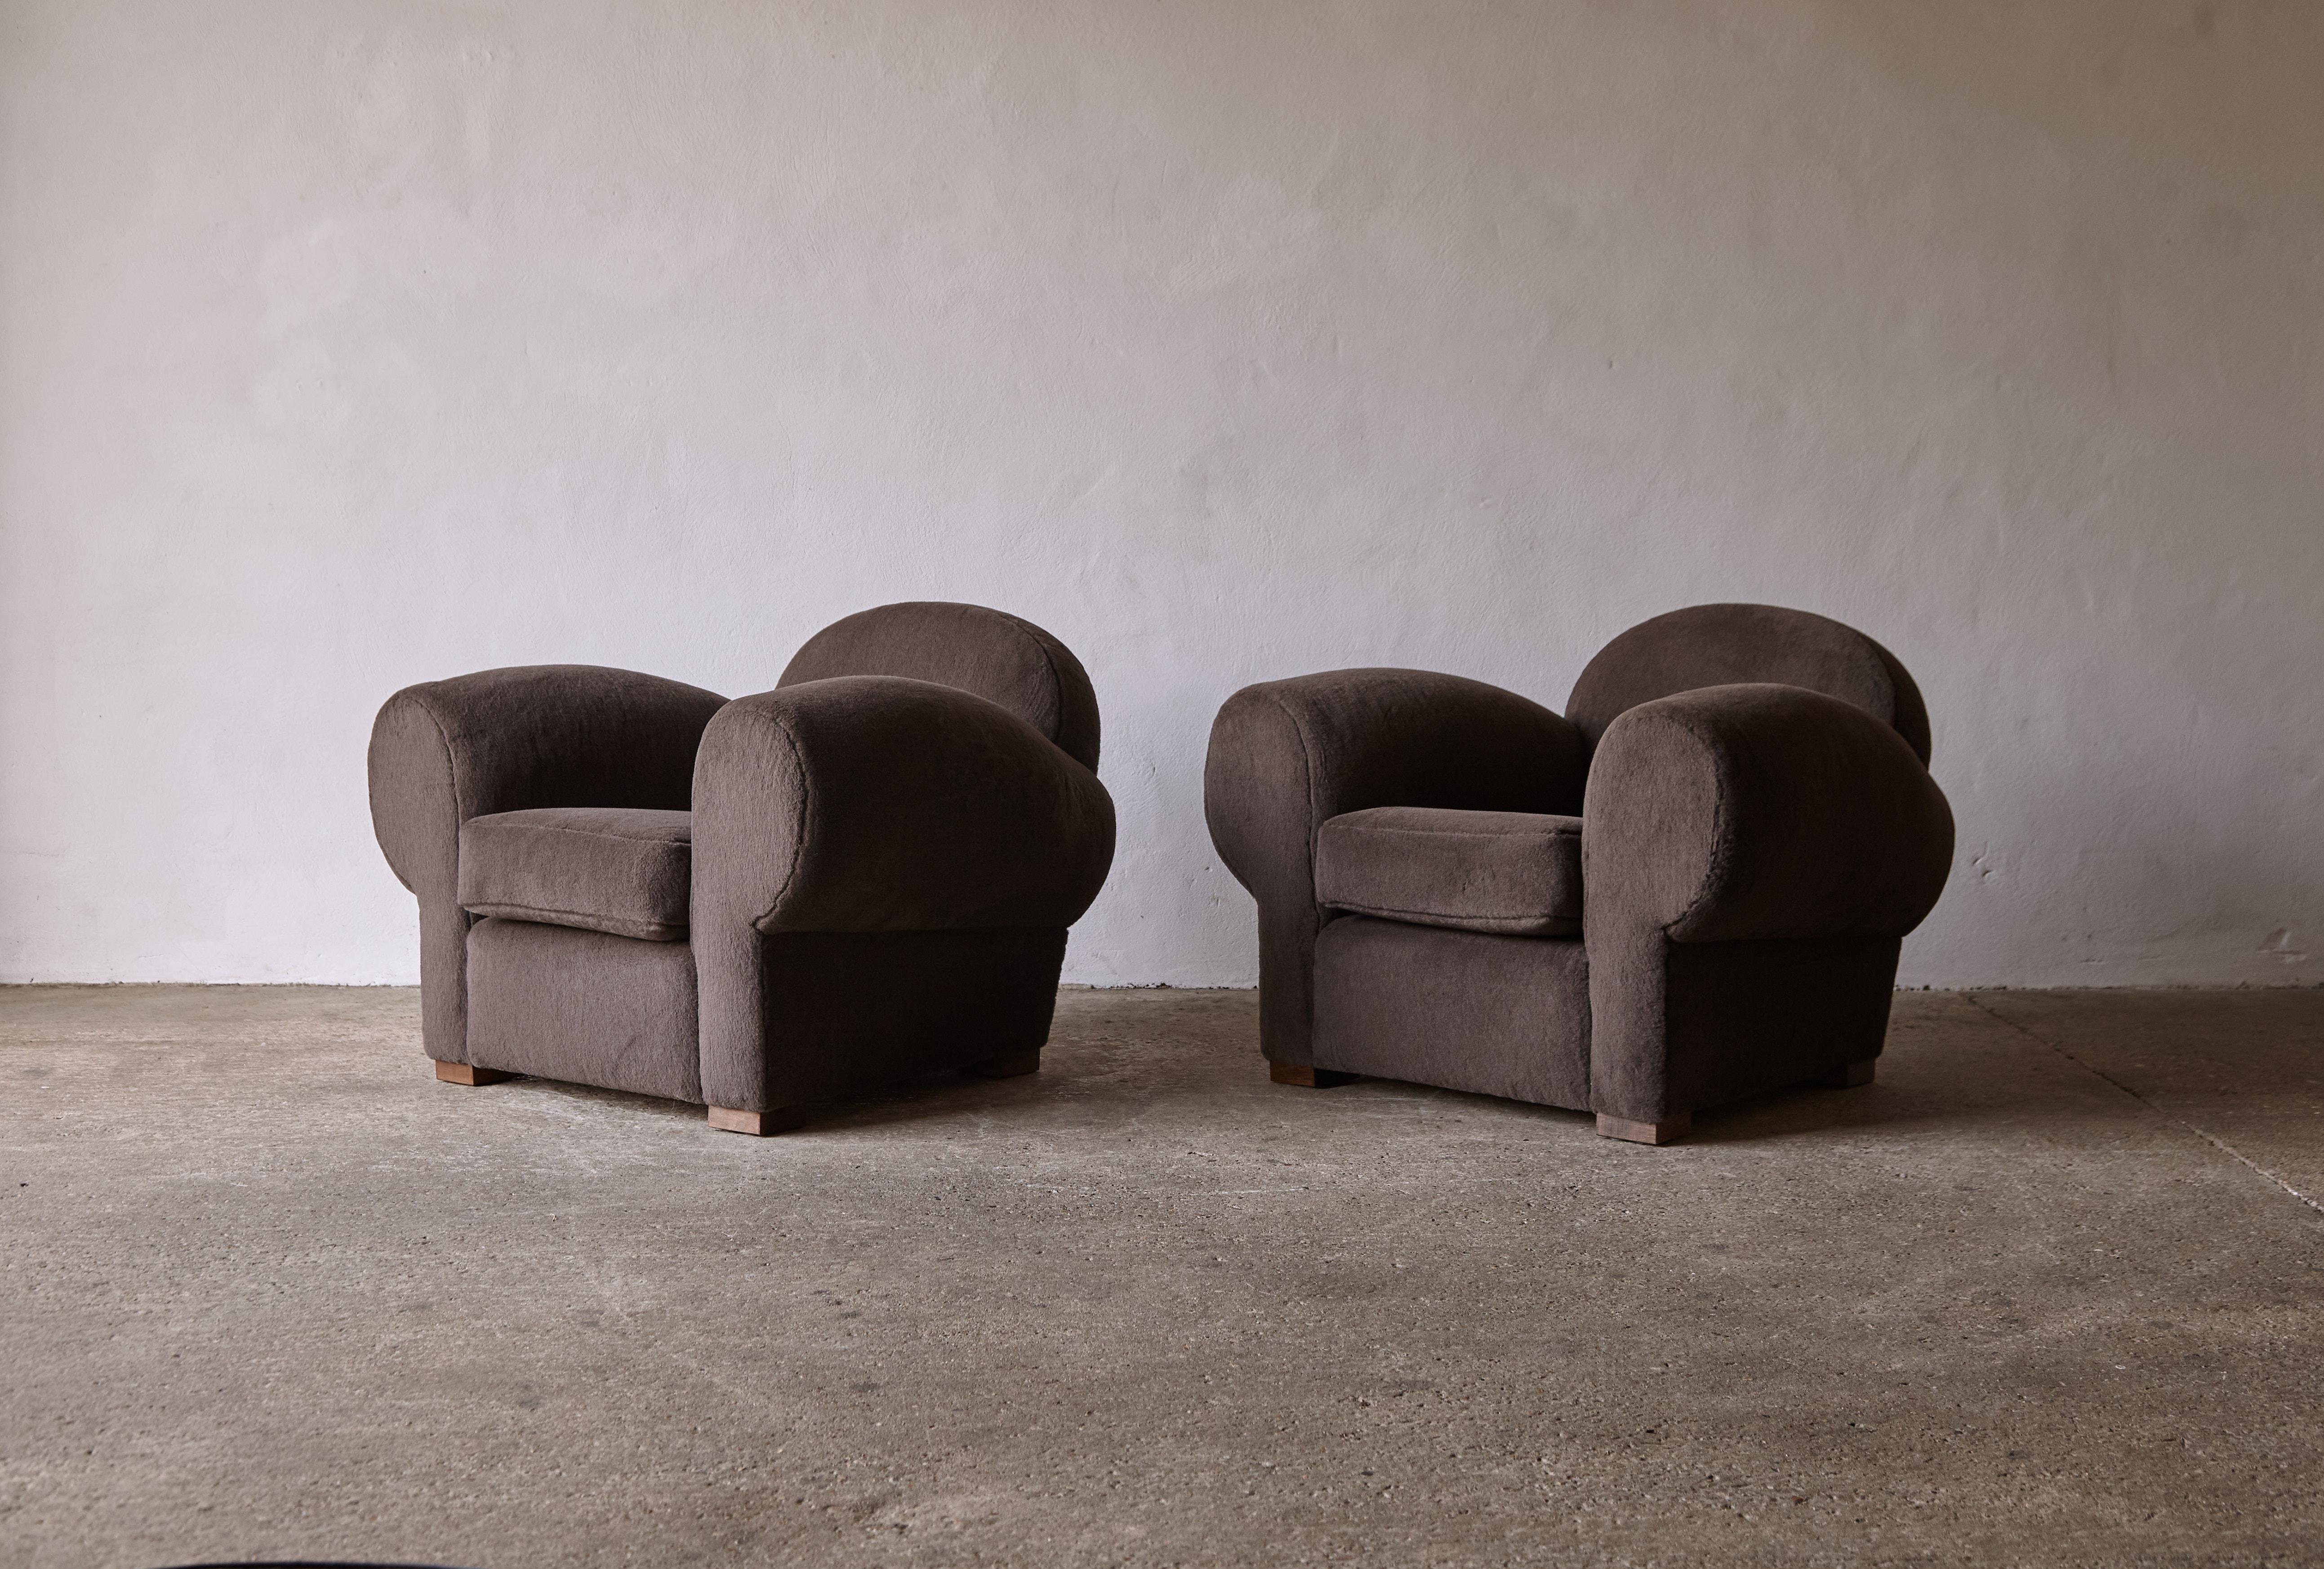 Superbe paire de fauteuils club modernes à assise profonde, revêtus d'Alpaga pur. Cadre en hêtre de haute qualité fabriqué à la main et nouvellement recouvert d'un tissu 100% alpaga de première qualité brun/gris. Expédition rapide dans le monde